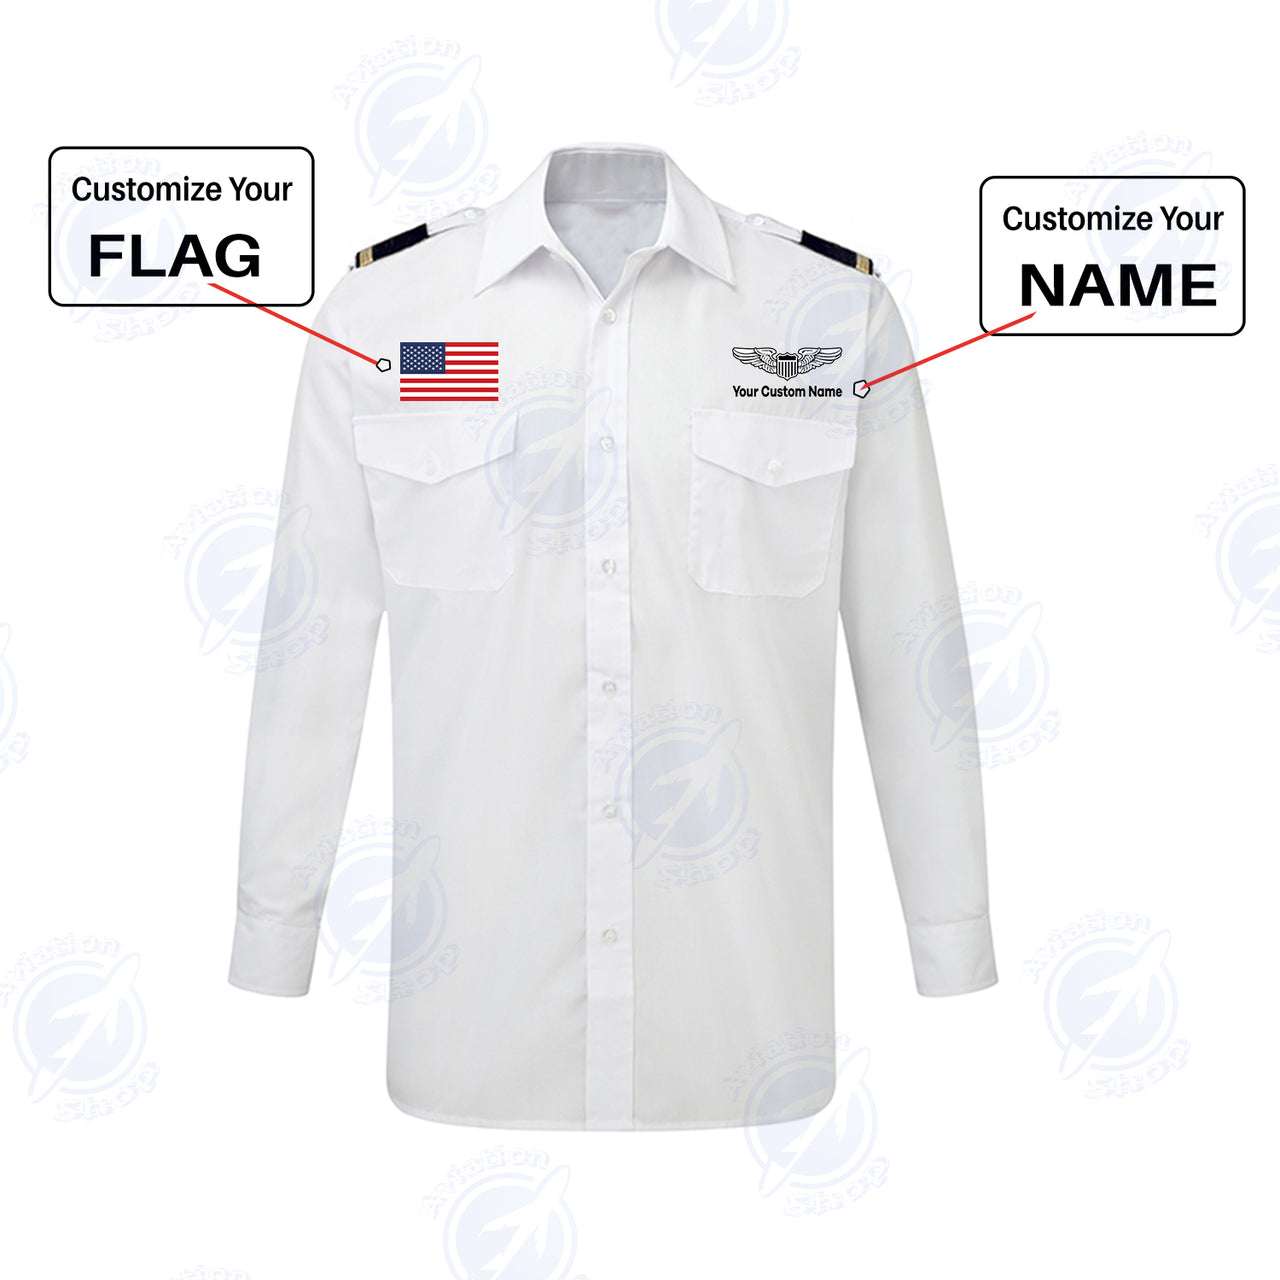 Custom Flag & Name with EPAULETTES (Military Badge) Designed Long Sleeve Pilot Shirts